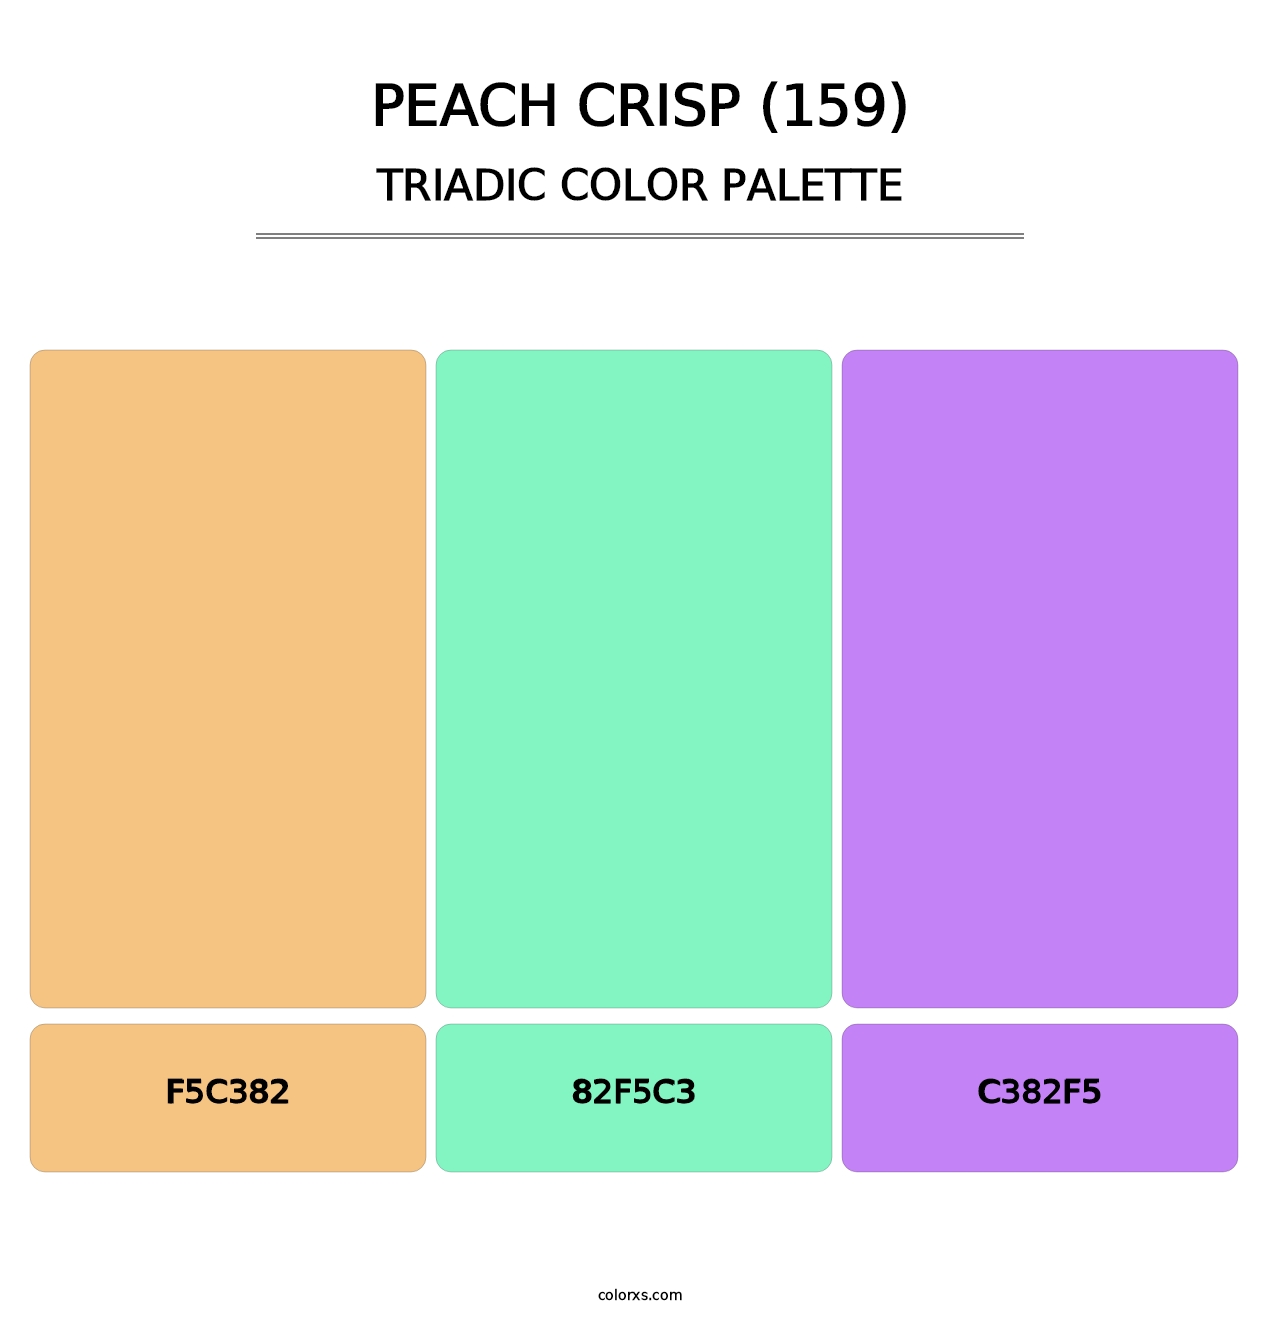 Peach Crisp (159) - Triadic Color Palette